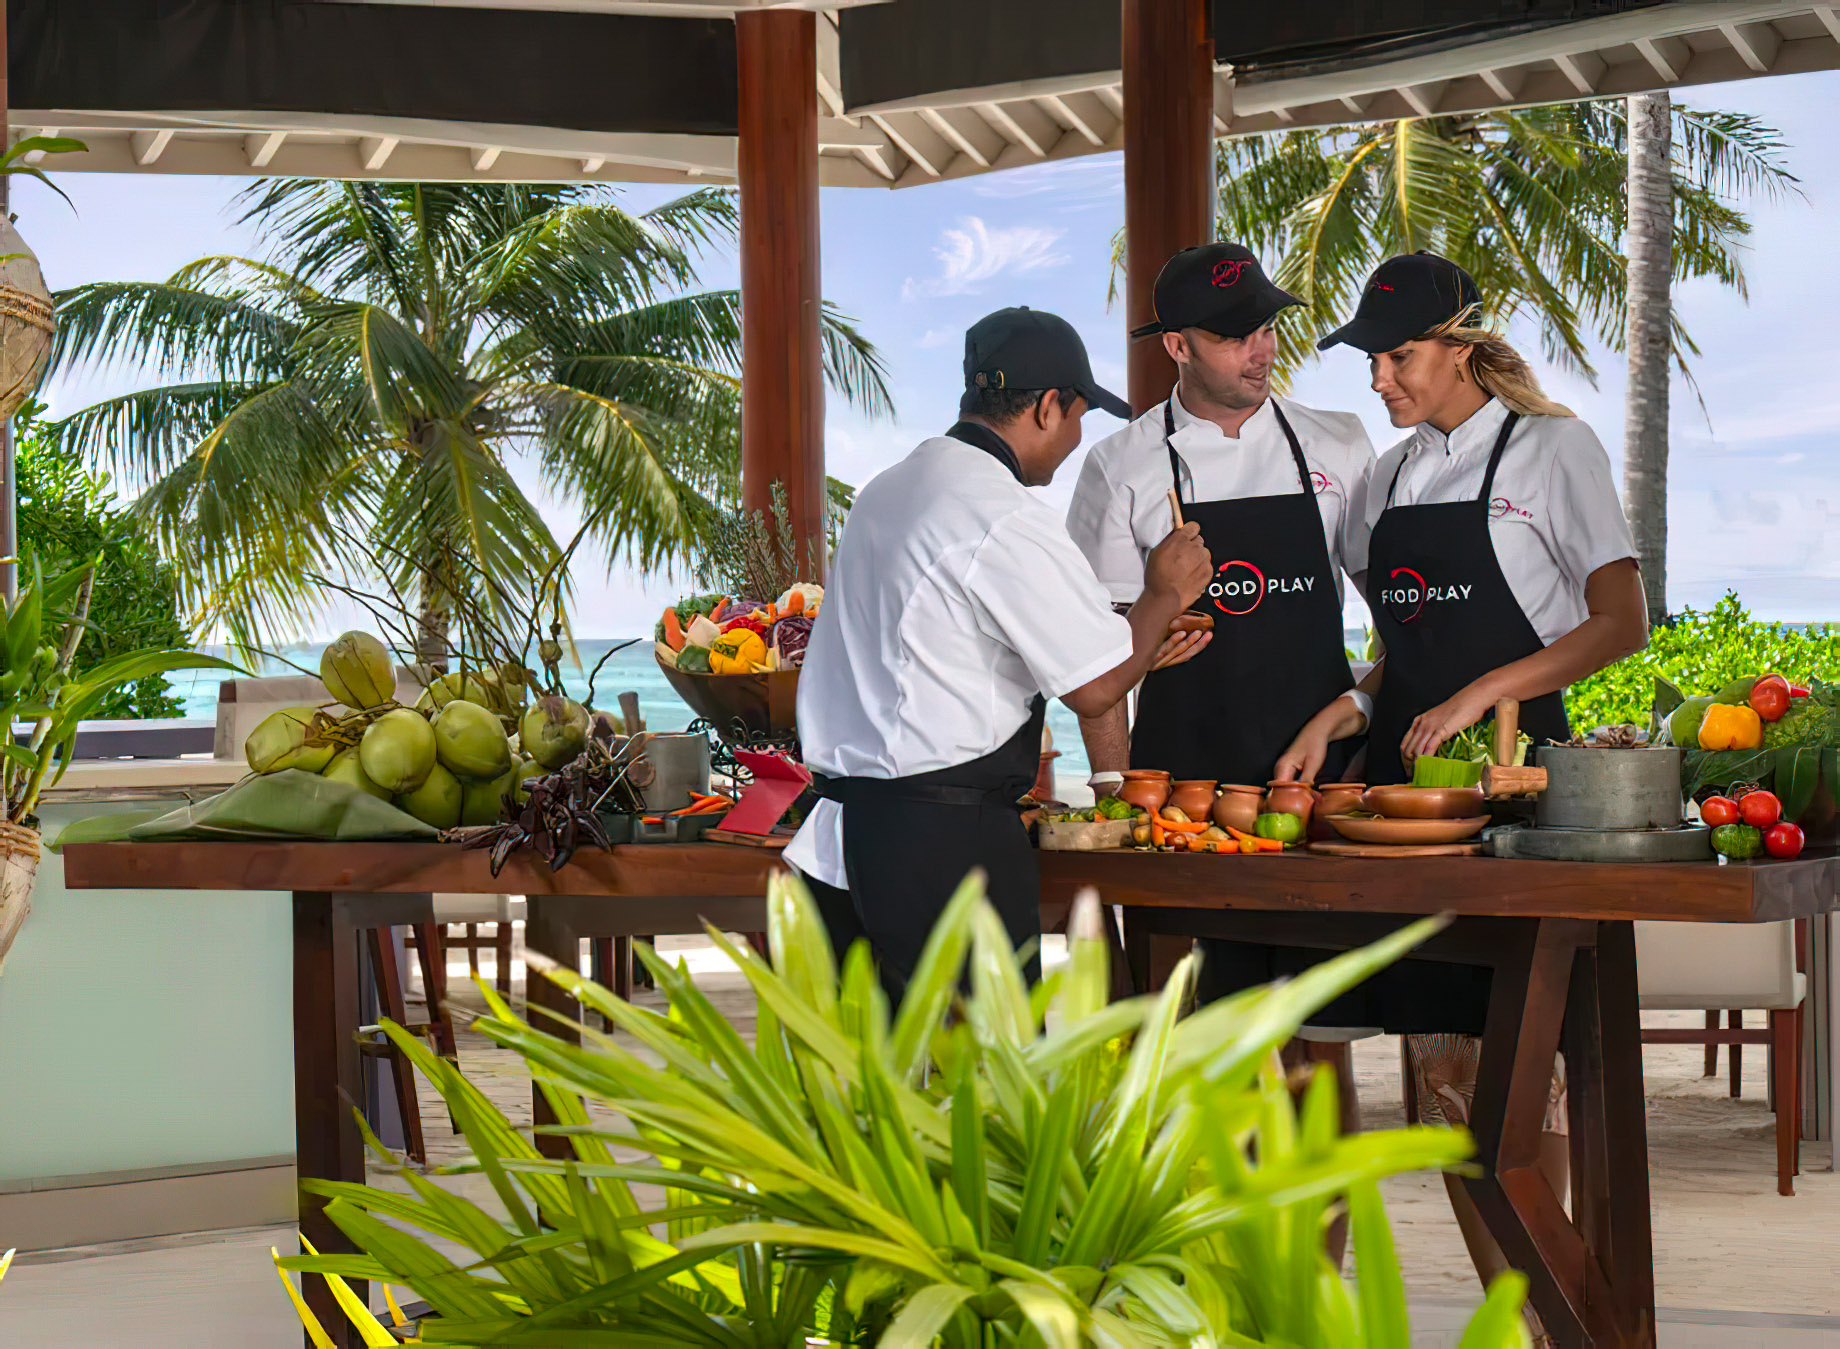 Niyama Private Islands Maldives Resort – Dhaalu Atoll, Maldives – Food Play Cooking Class